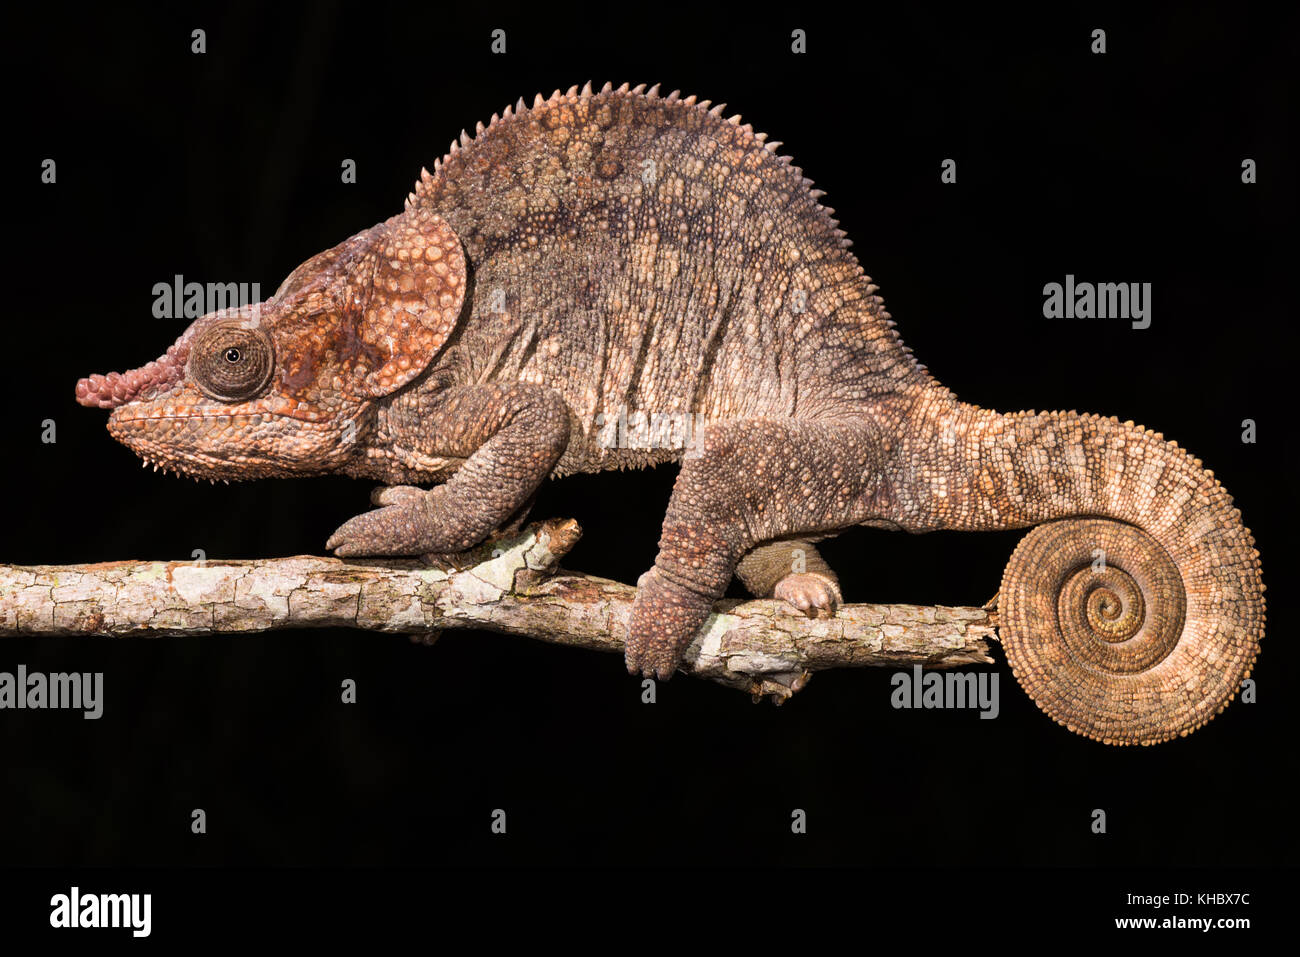 Short-horned chameleon (Calumma brevicorne), male, Analamazoatra, Andasibe National Park, Madagascar Stock Photo